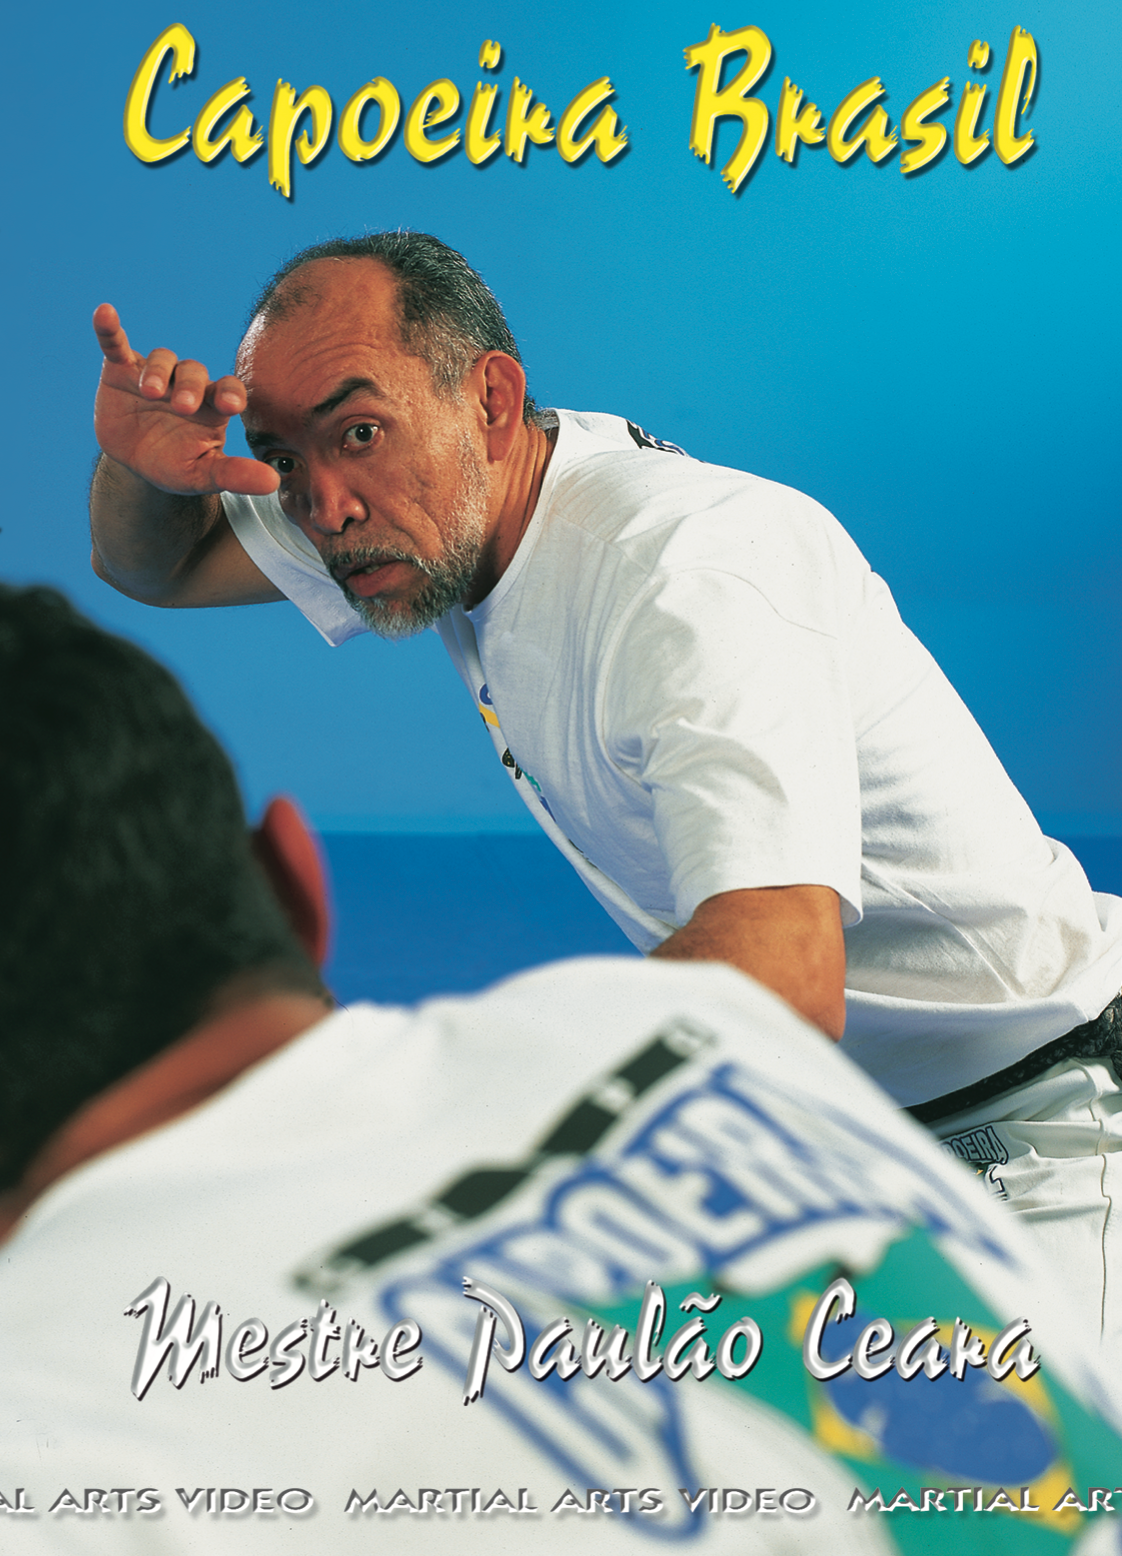 Capoeira Brasil DVD by Paulao Ceara - Budovideos